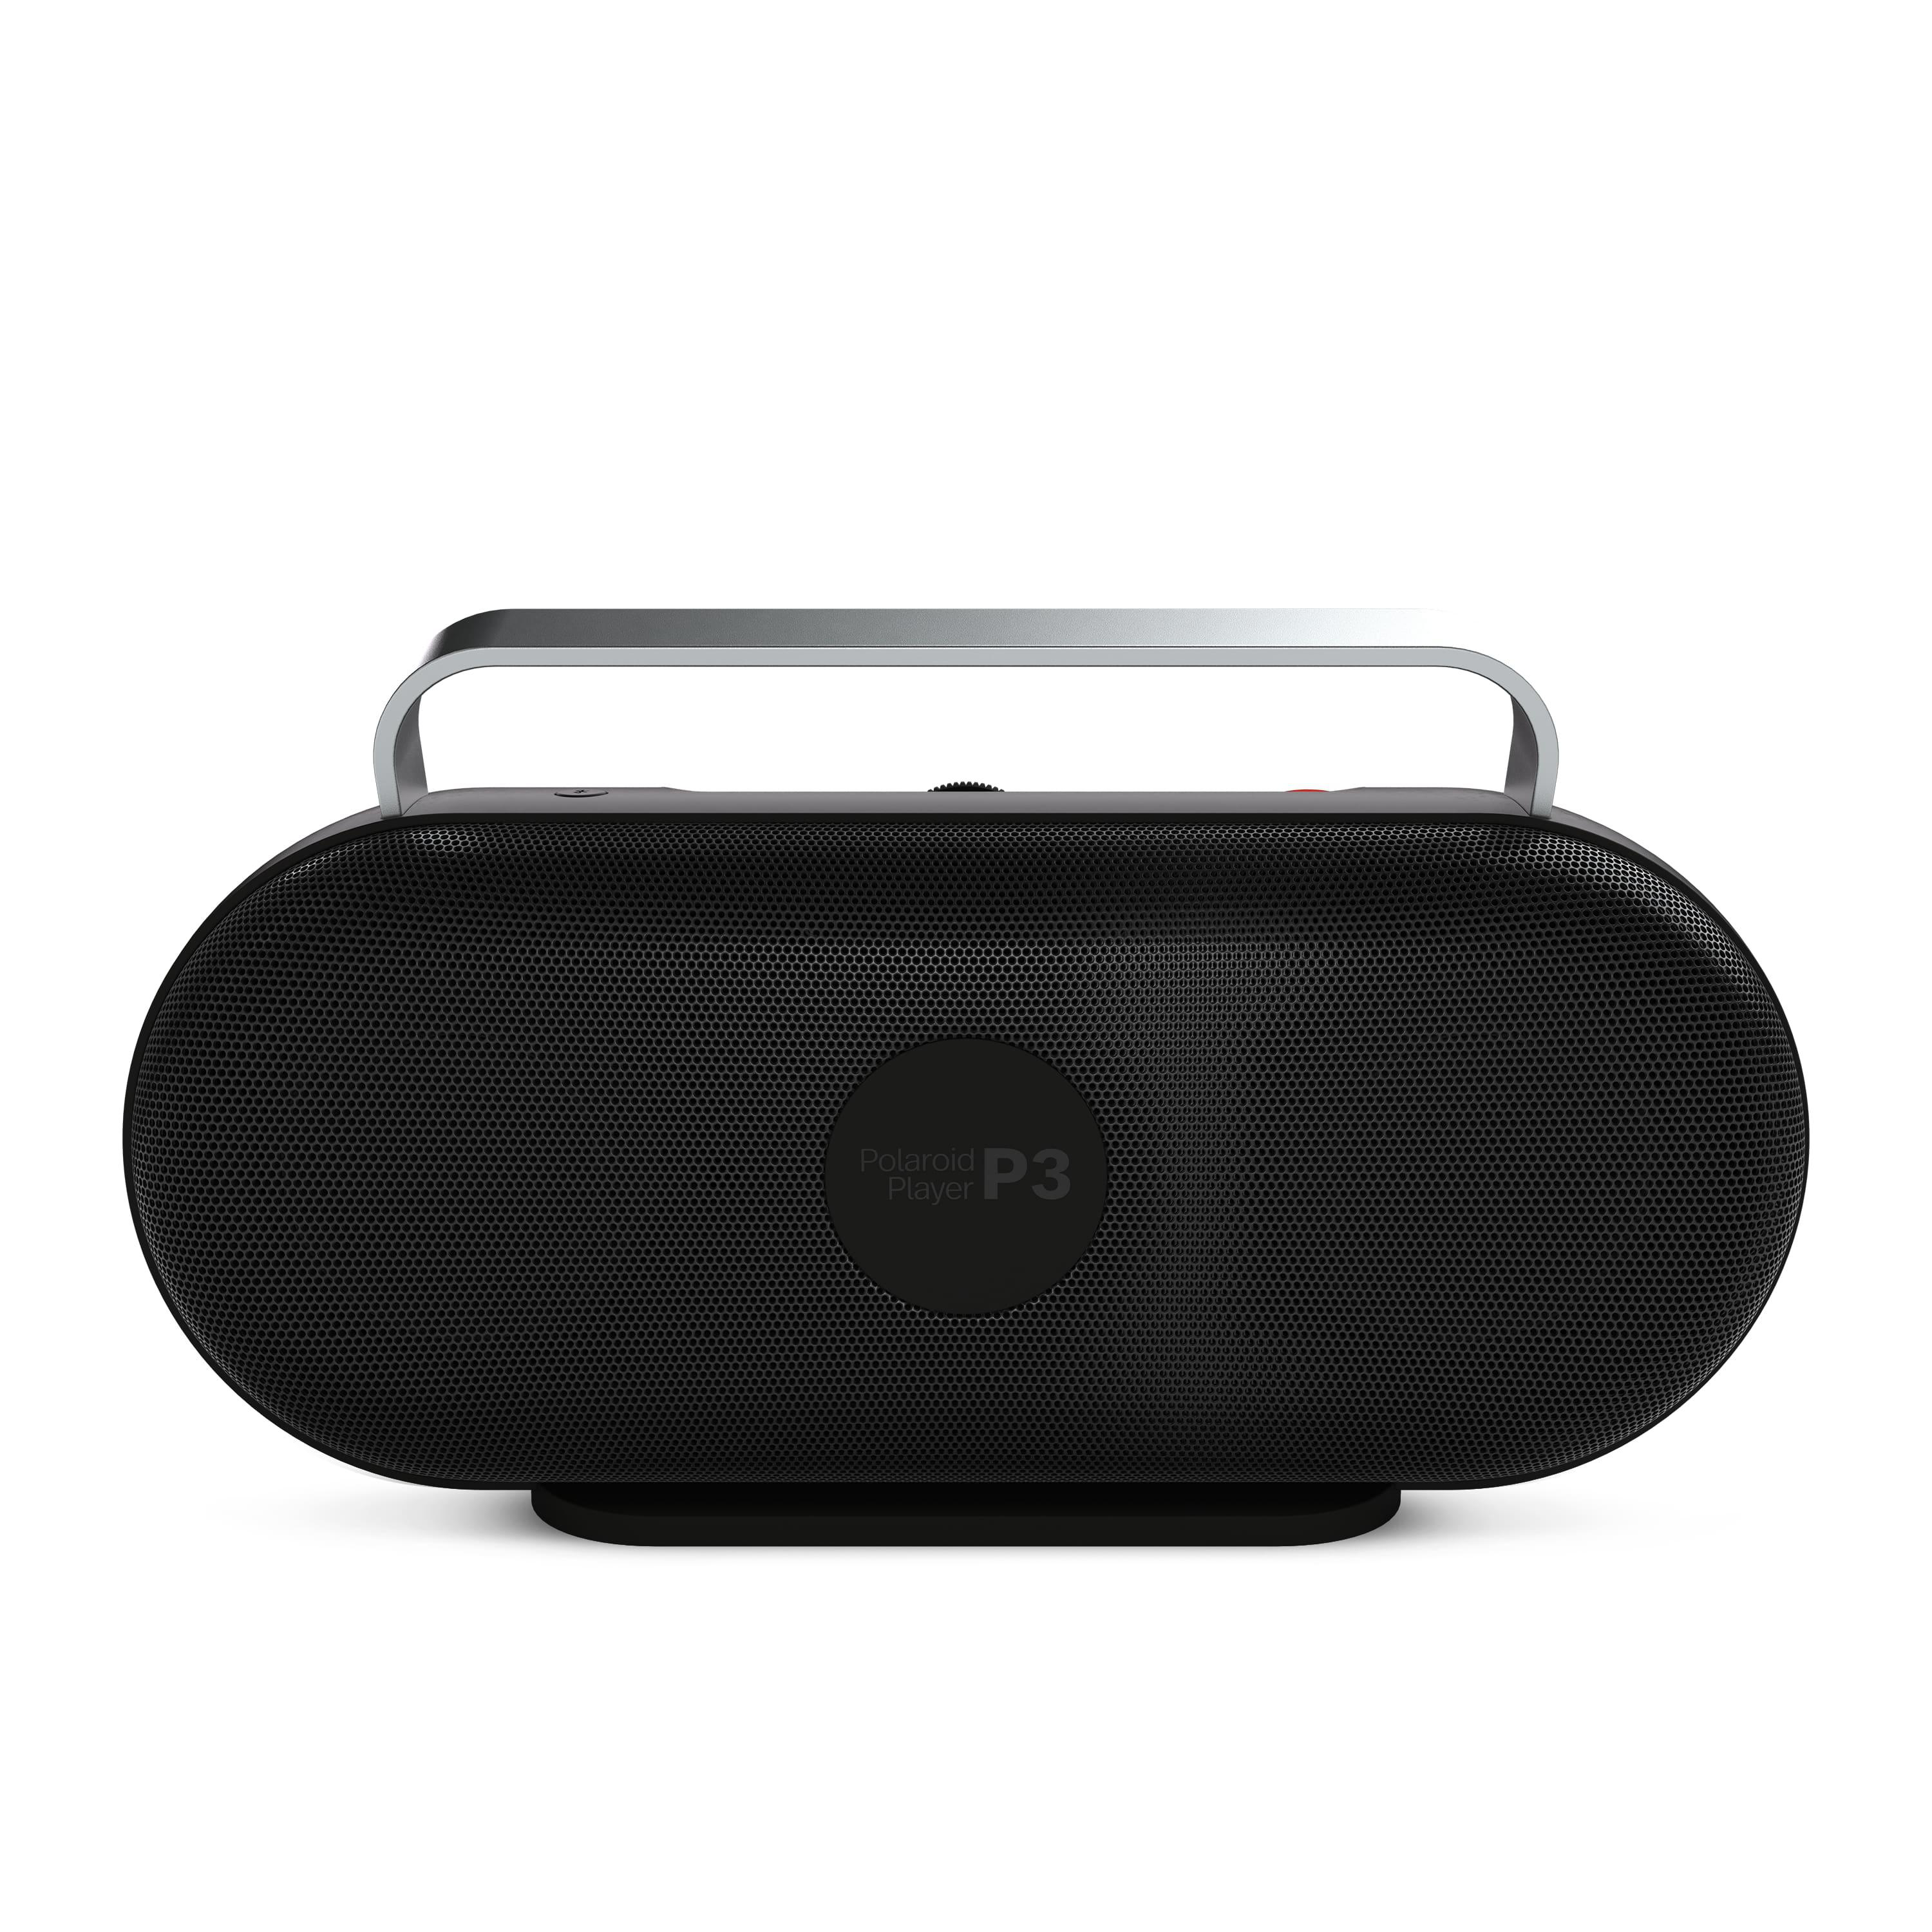 POLAROID P3 Music Bluetooth Player Lautsprecher Schwarz/Weiß 